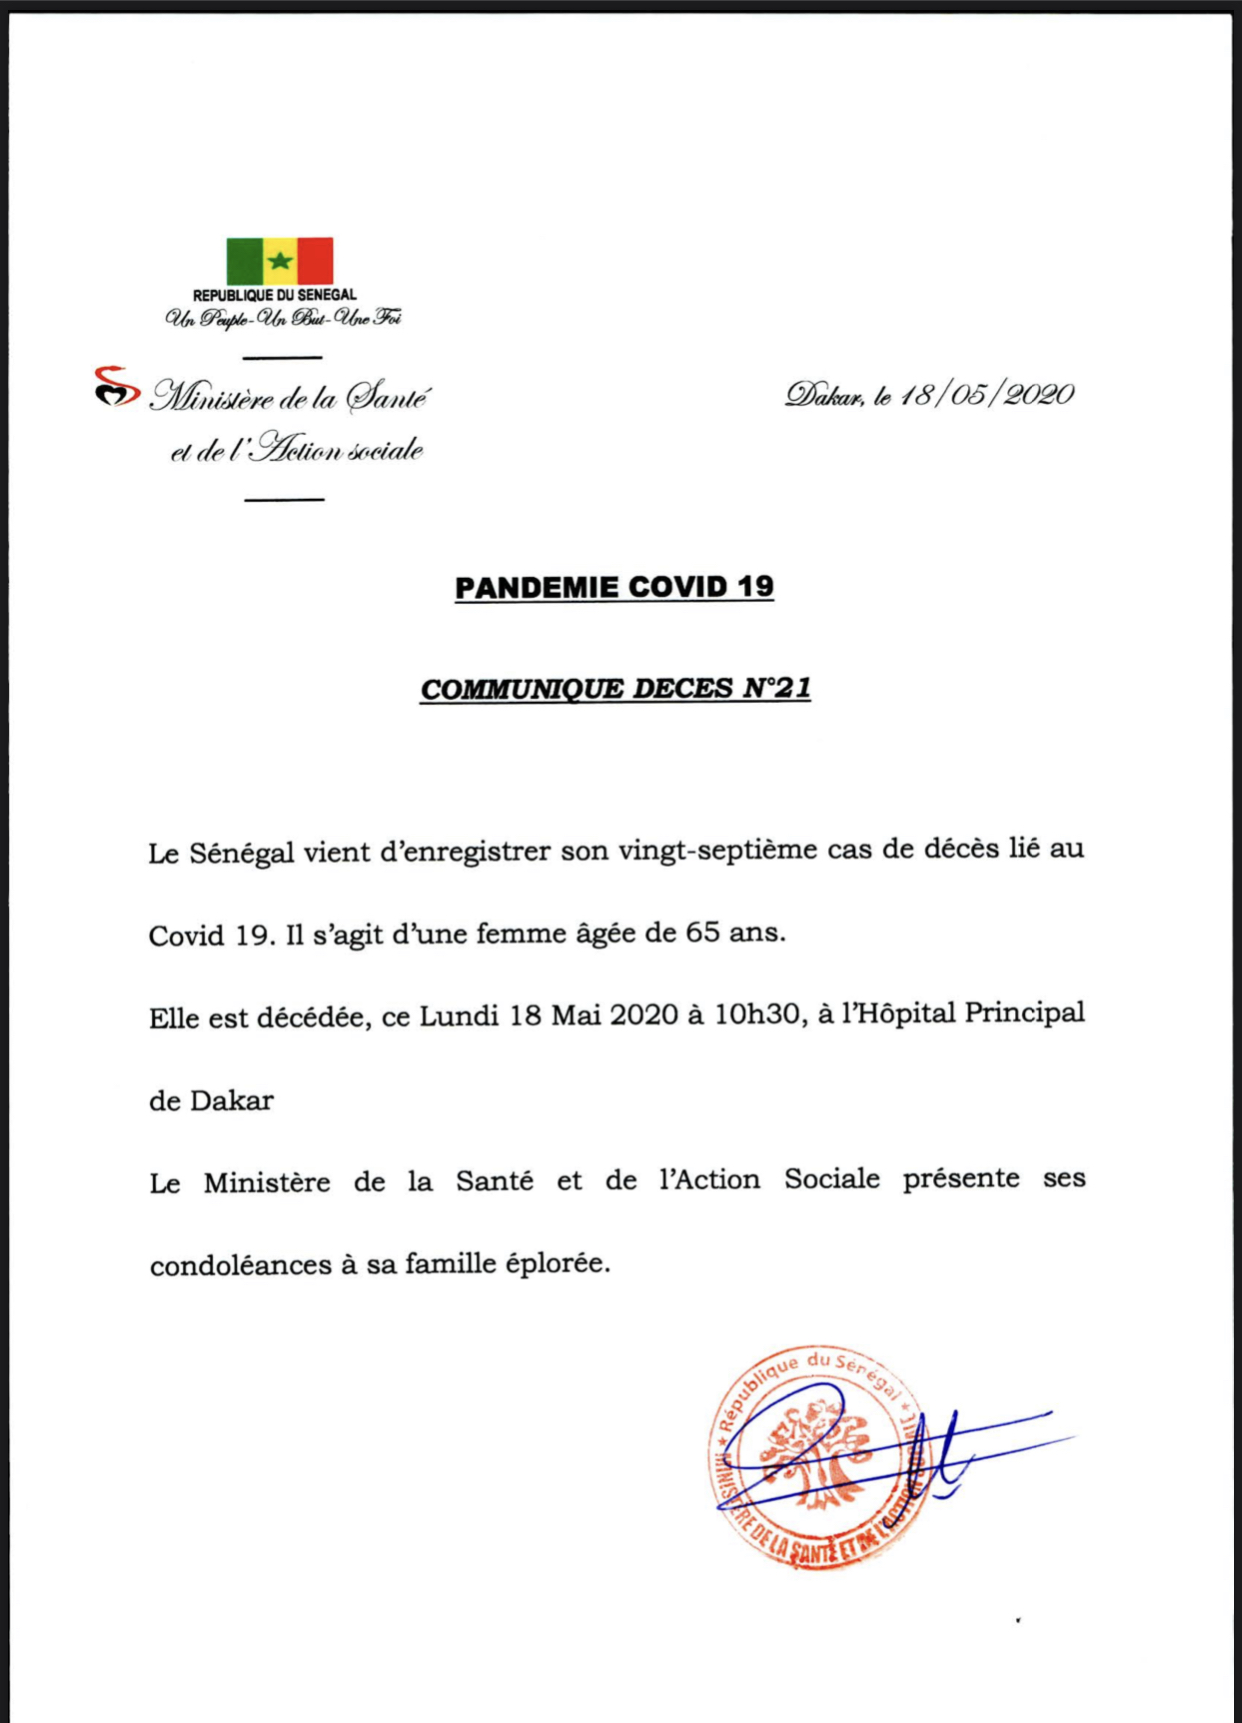 URGENT : Le Sénégal enregistre son 27e décès lié à la Covid-19.